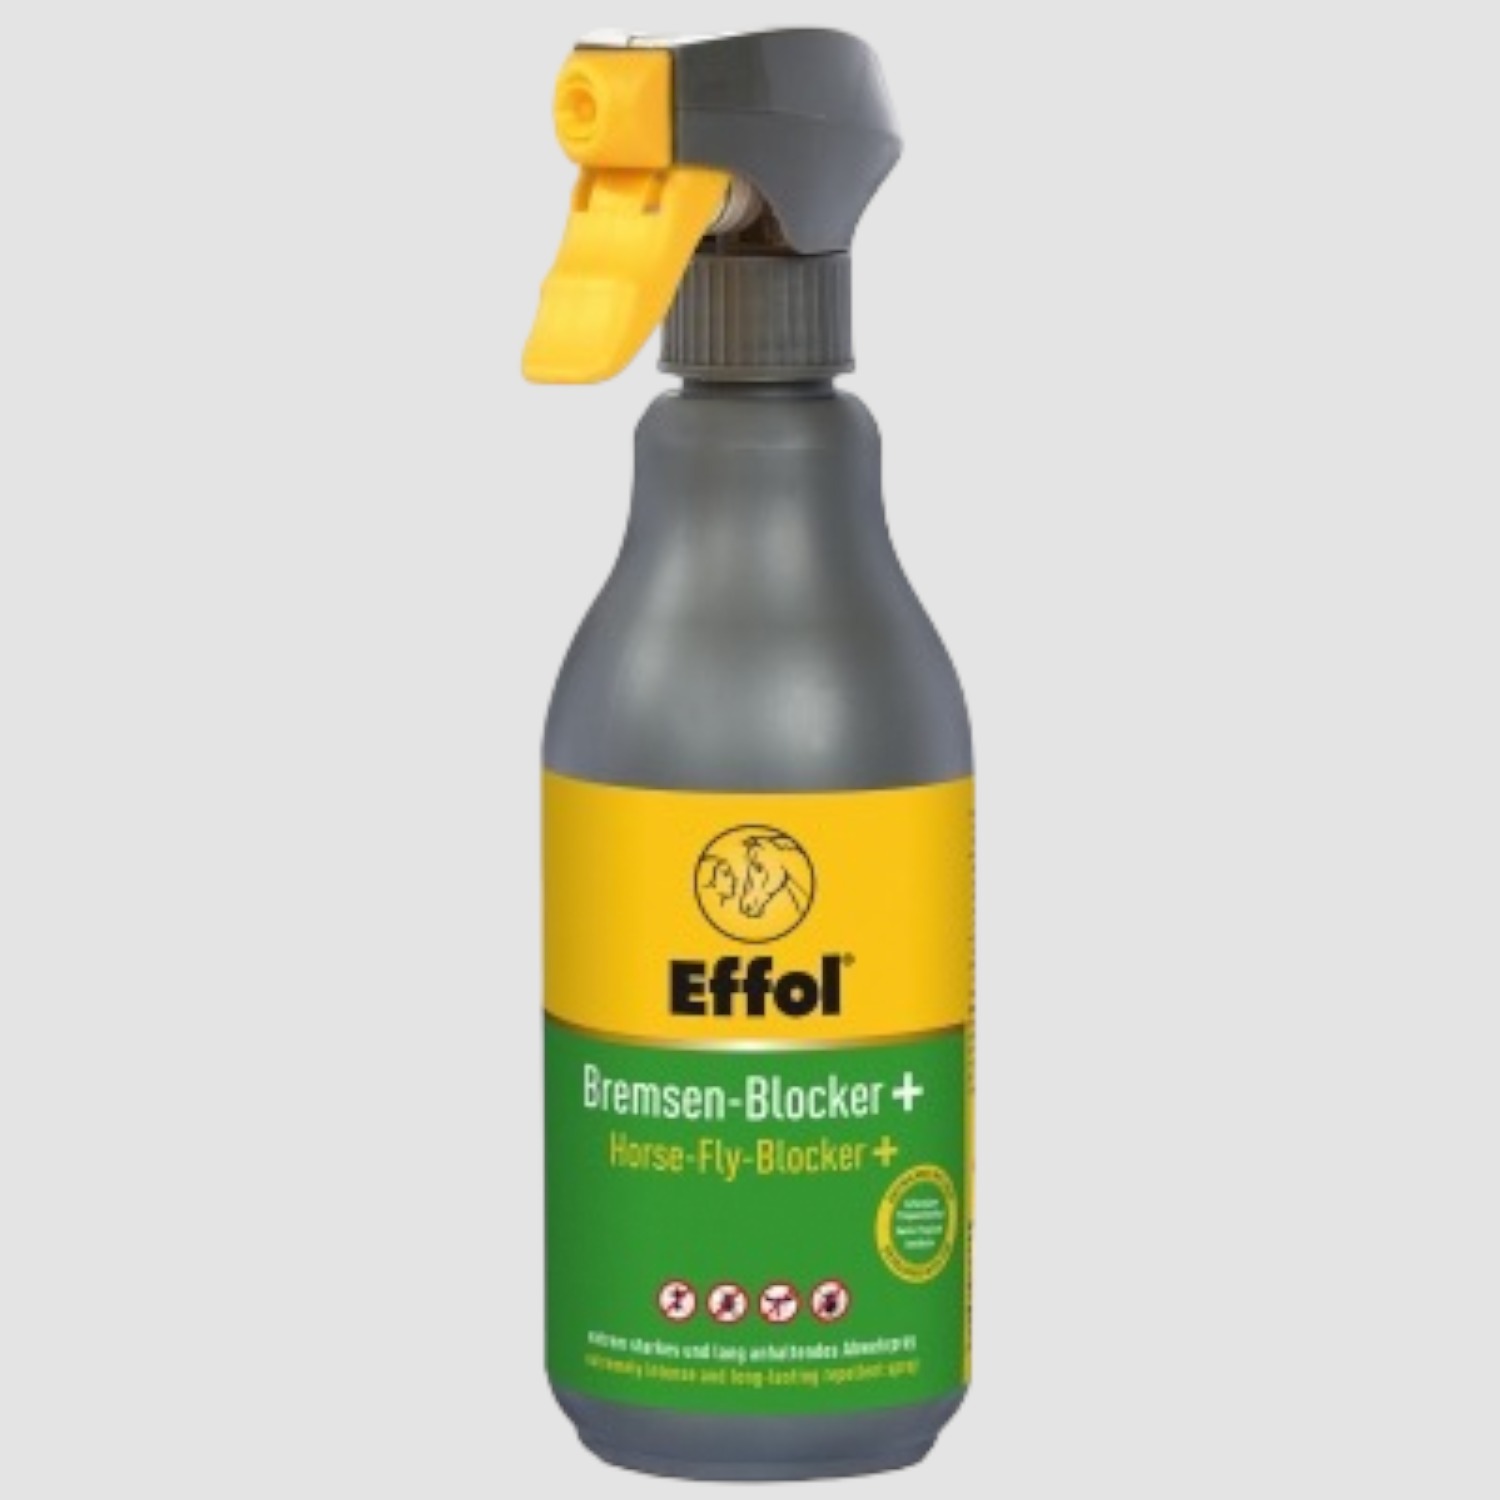 Effol Bremsen-Blocker+ Spray 500ml